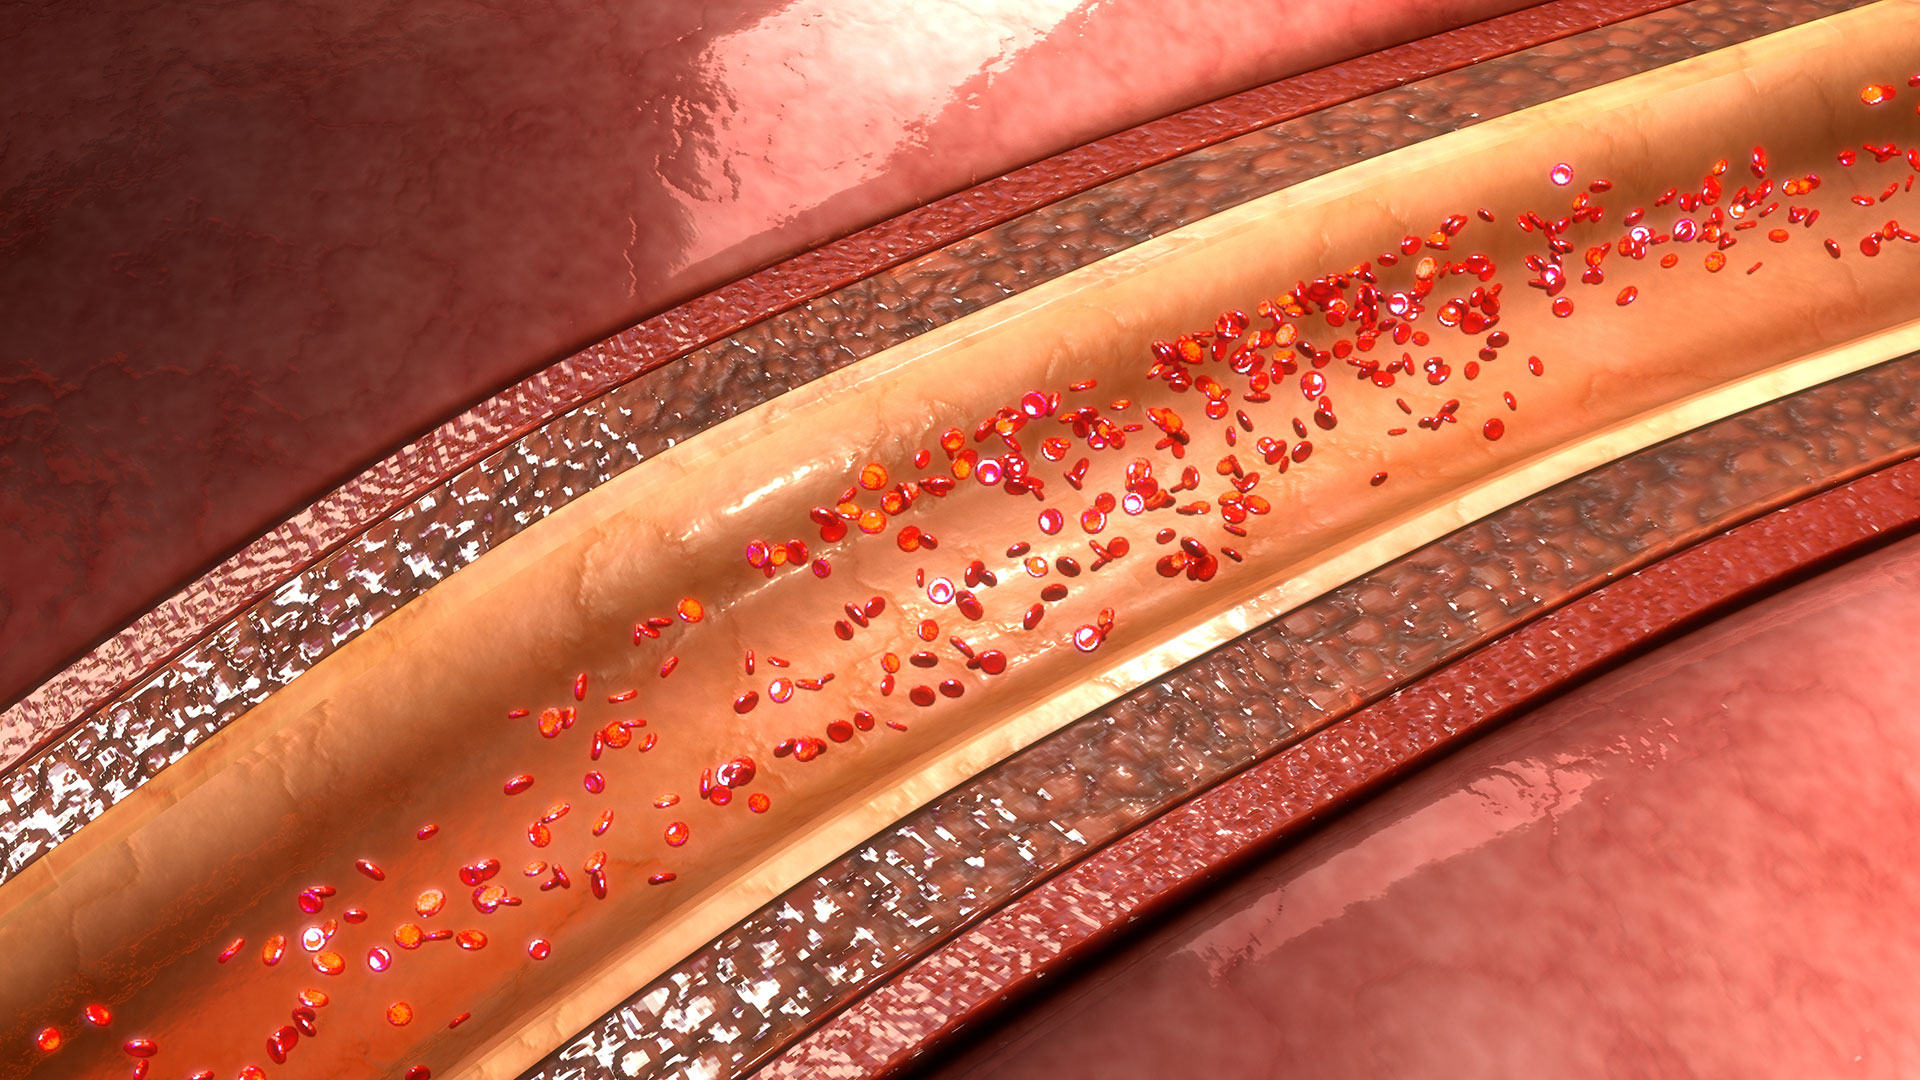 Investigating Arterial Calcium Buildup in Chronic Kidney Disease